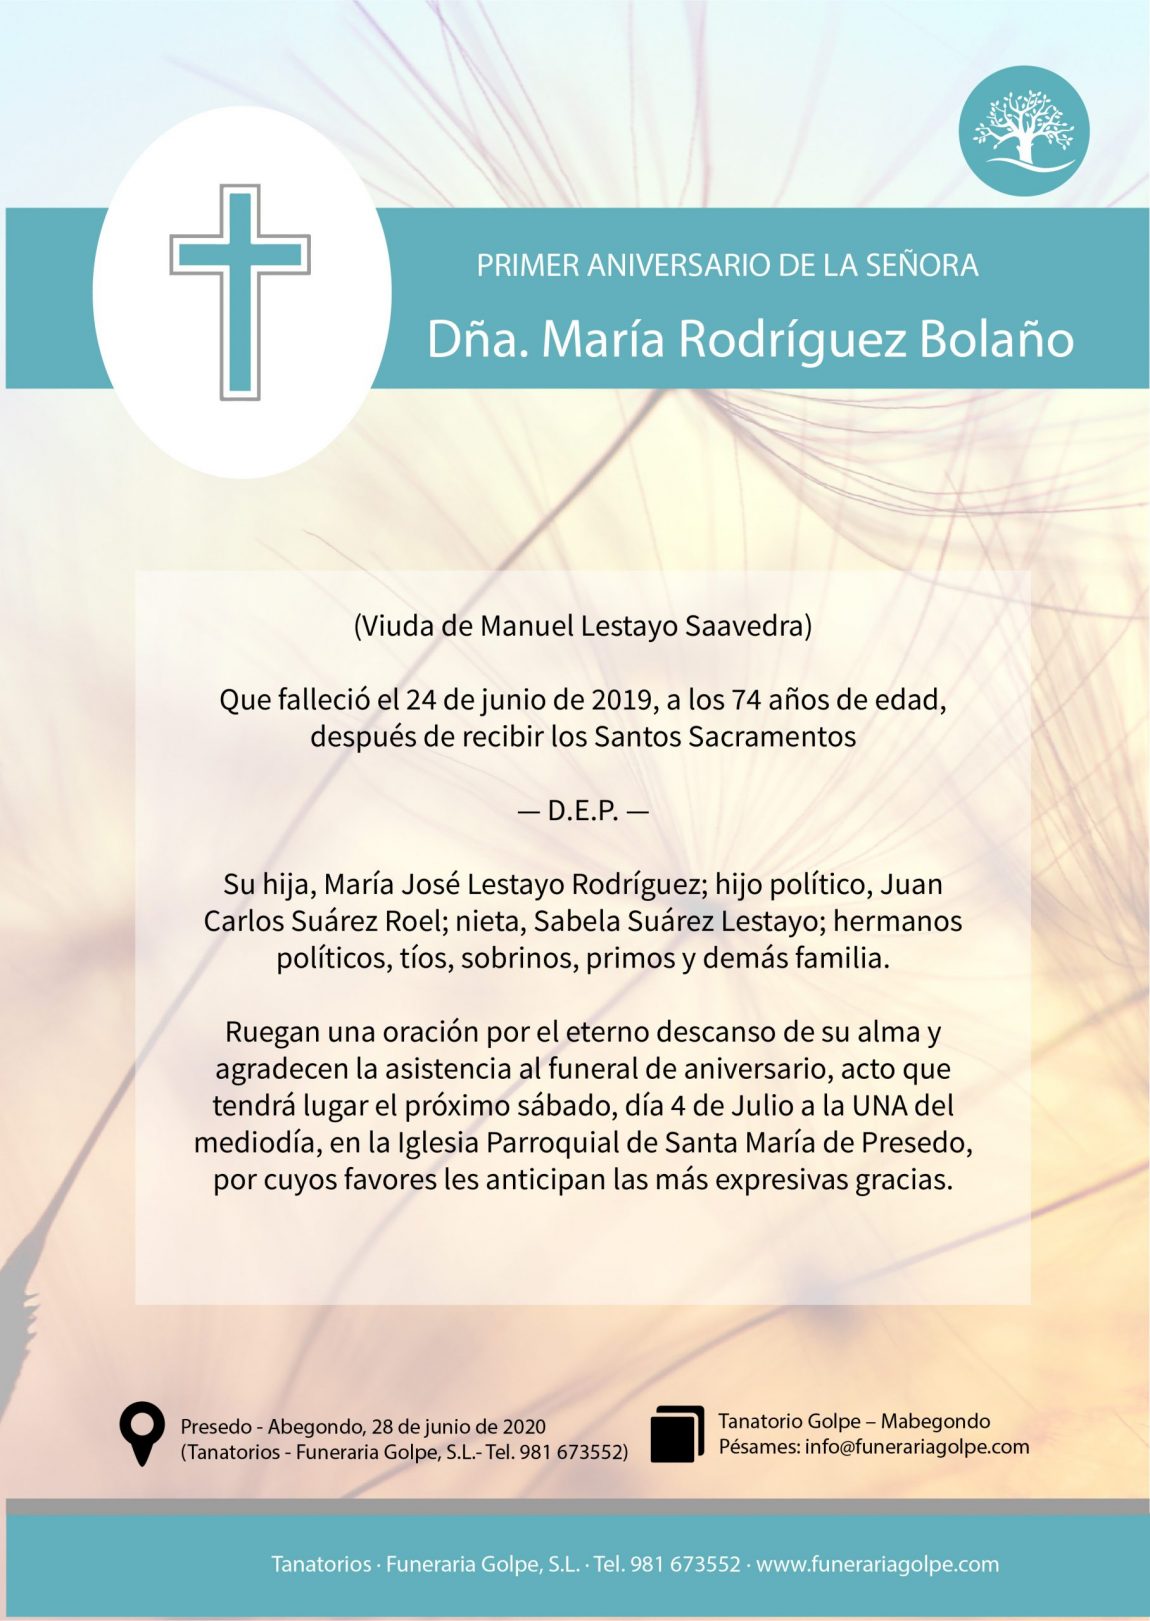 Dña.-María-Rodríguez-Bolaño-scaled.jpg